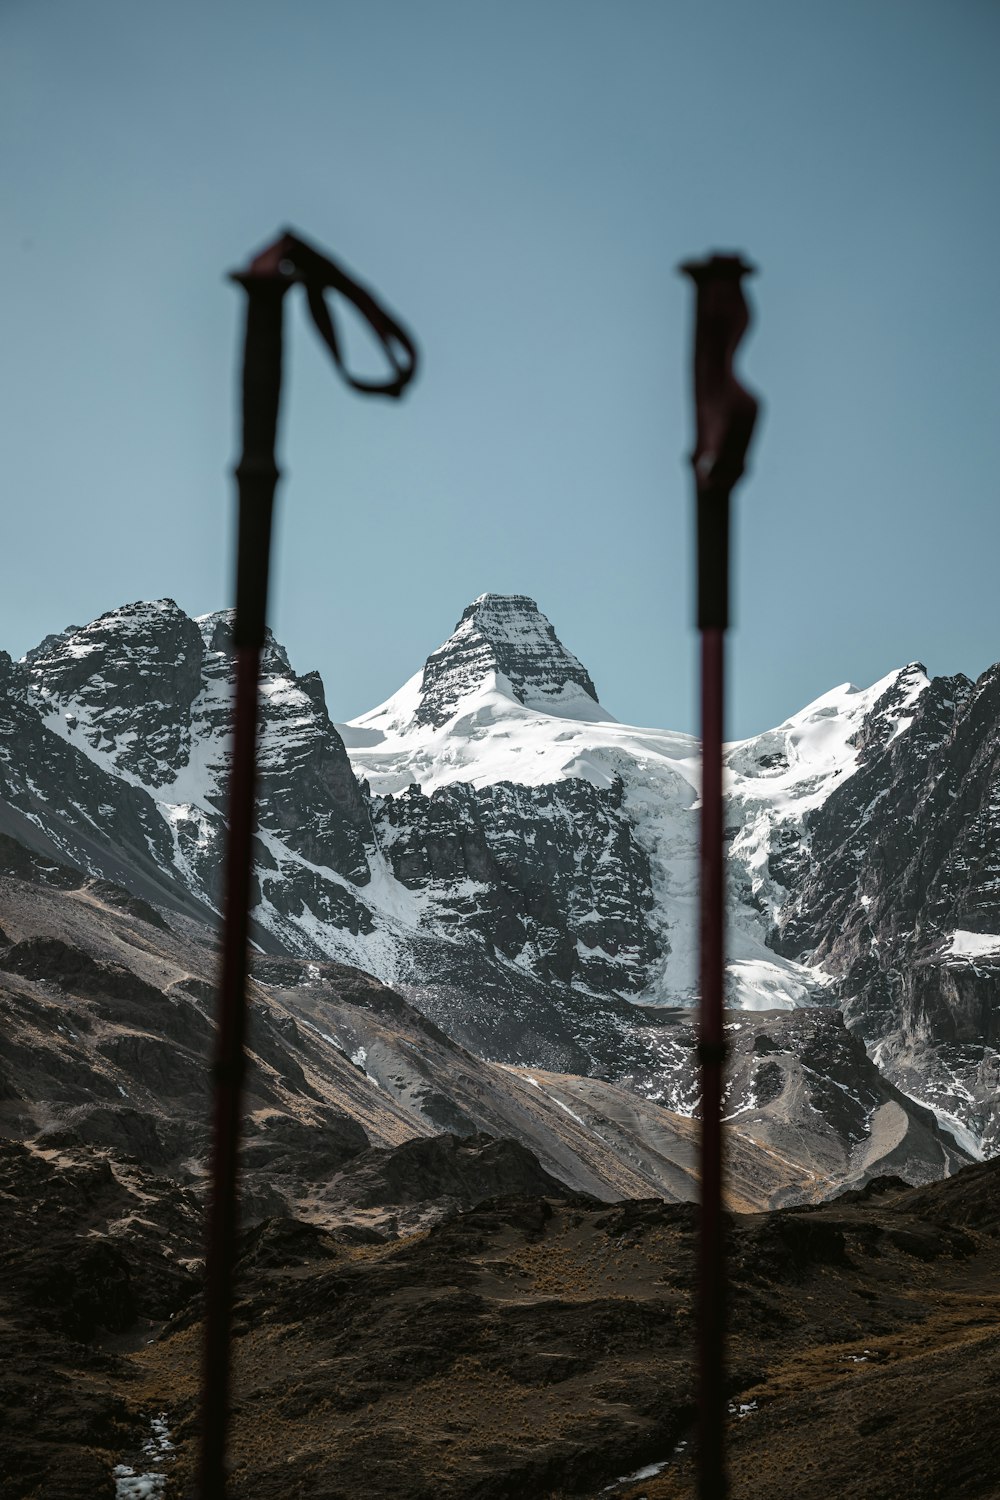 a view of a snowy mountain range through a pair of ski poles